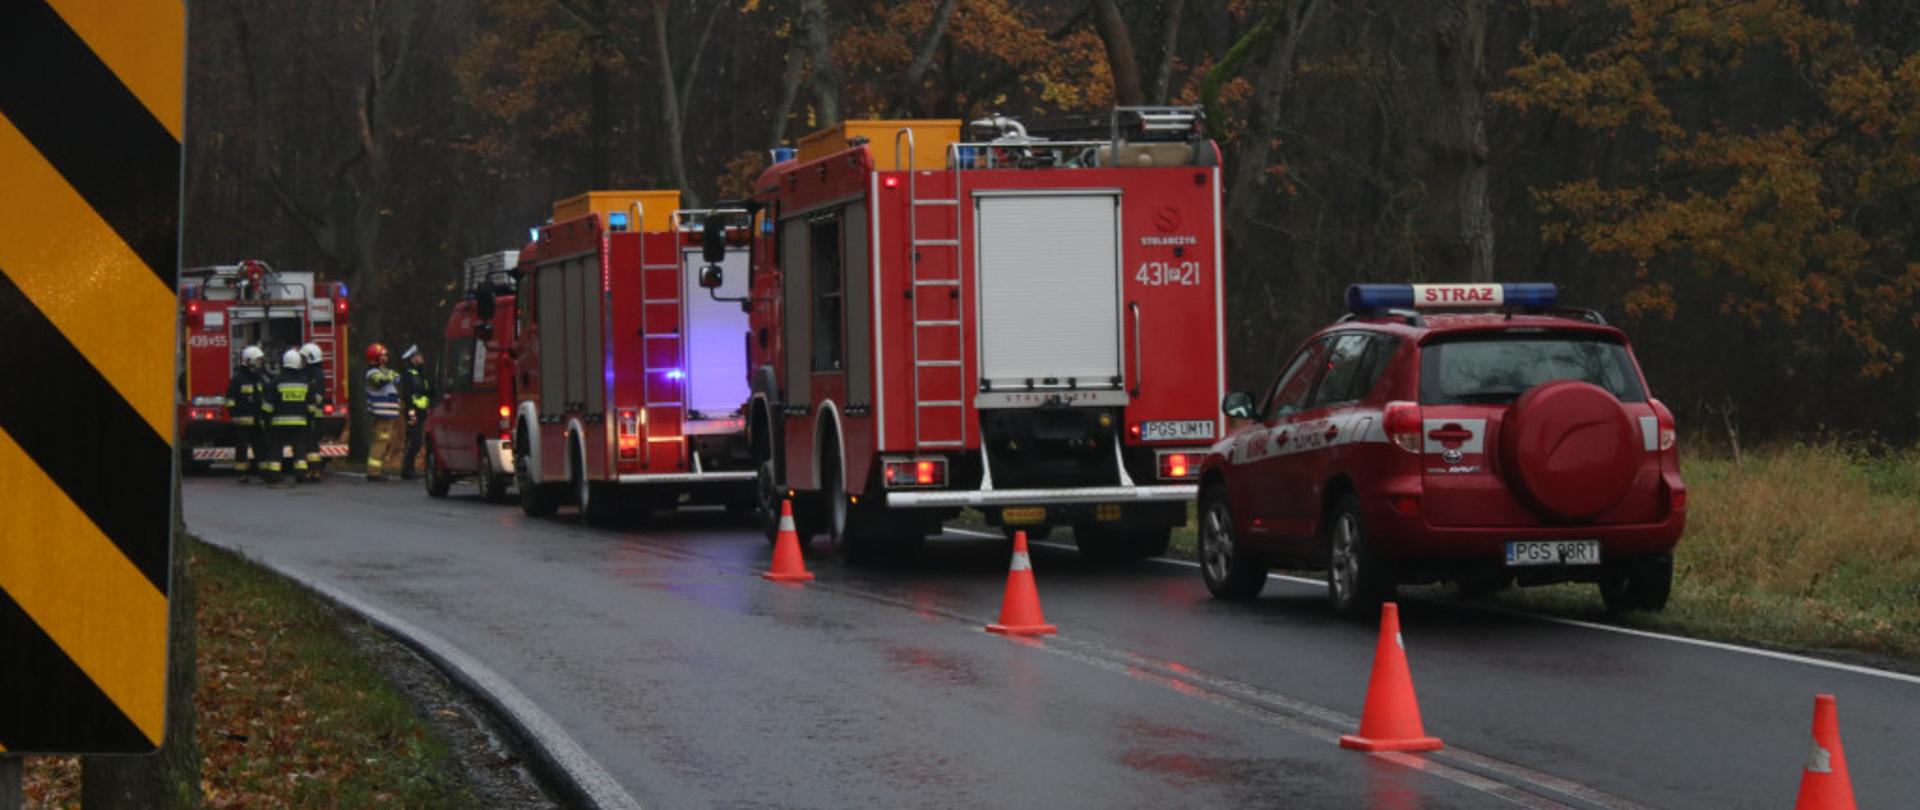 Zdjęcie przedstawia samochody strażackie stojące na drodze.